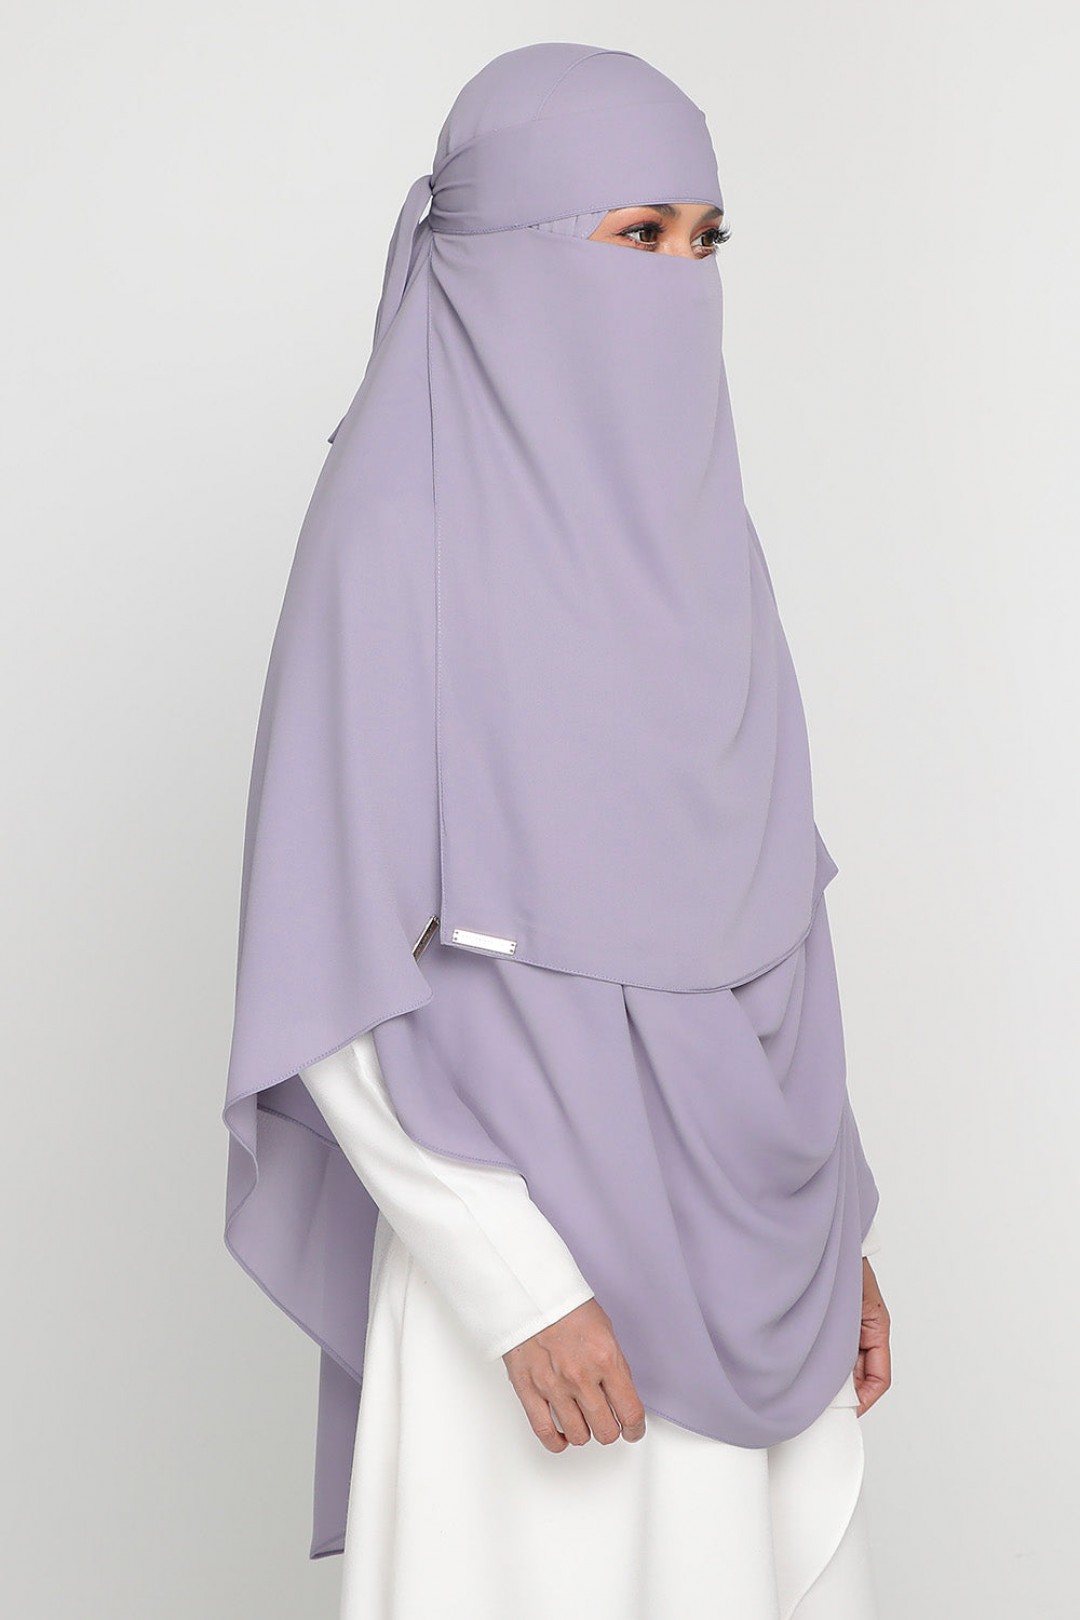 Niqab Kimono Iris